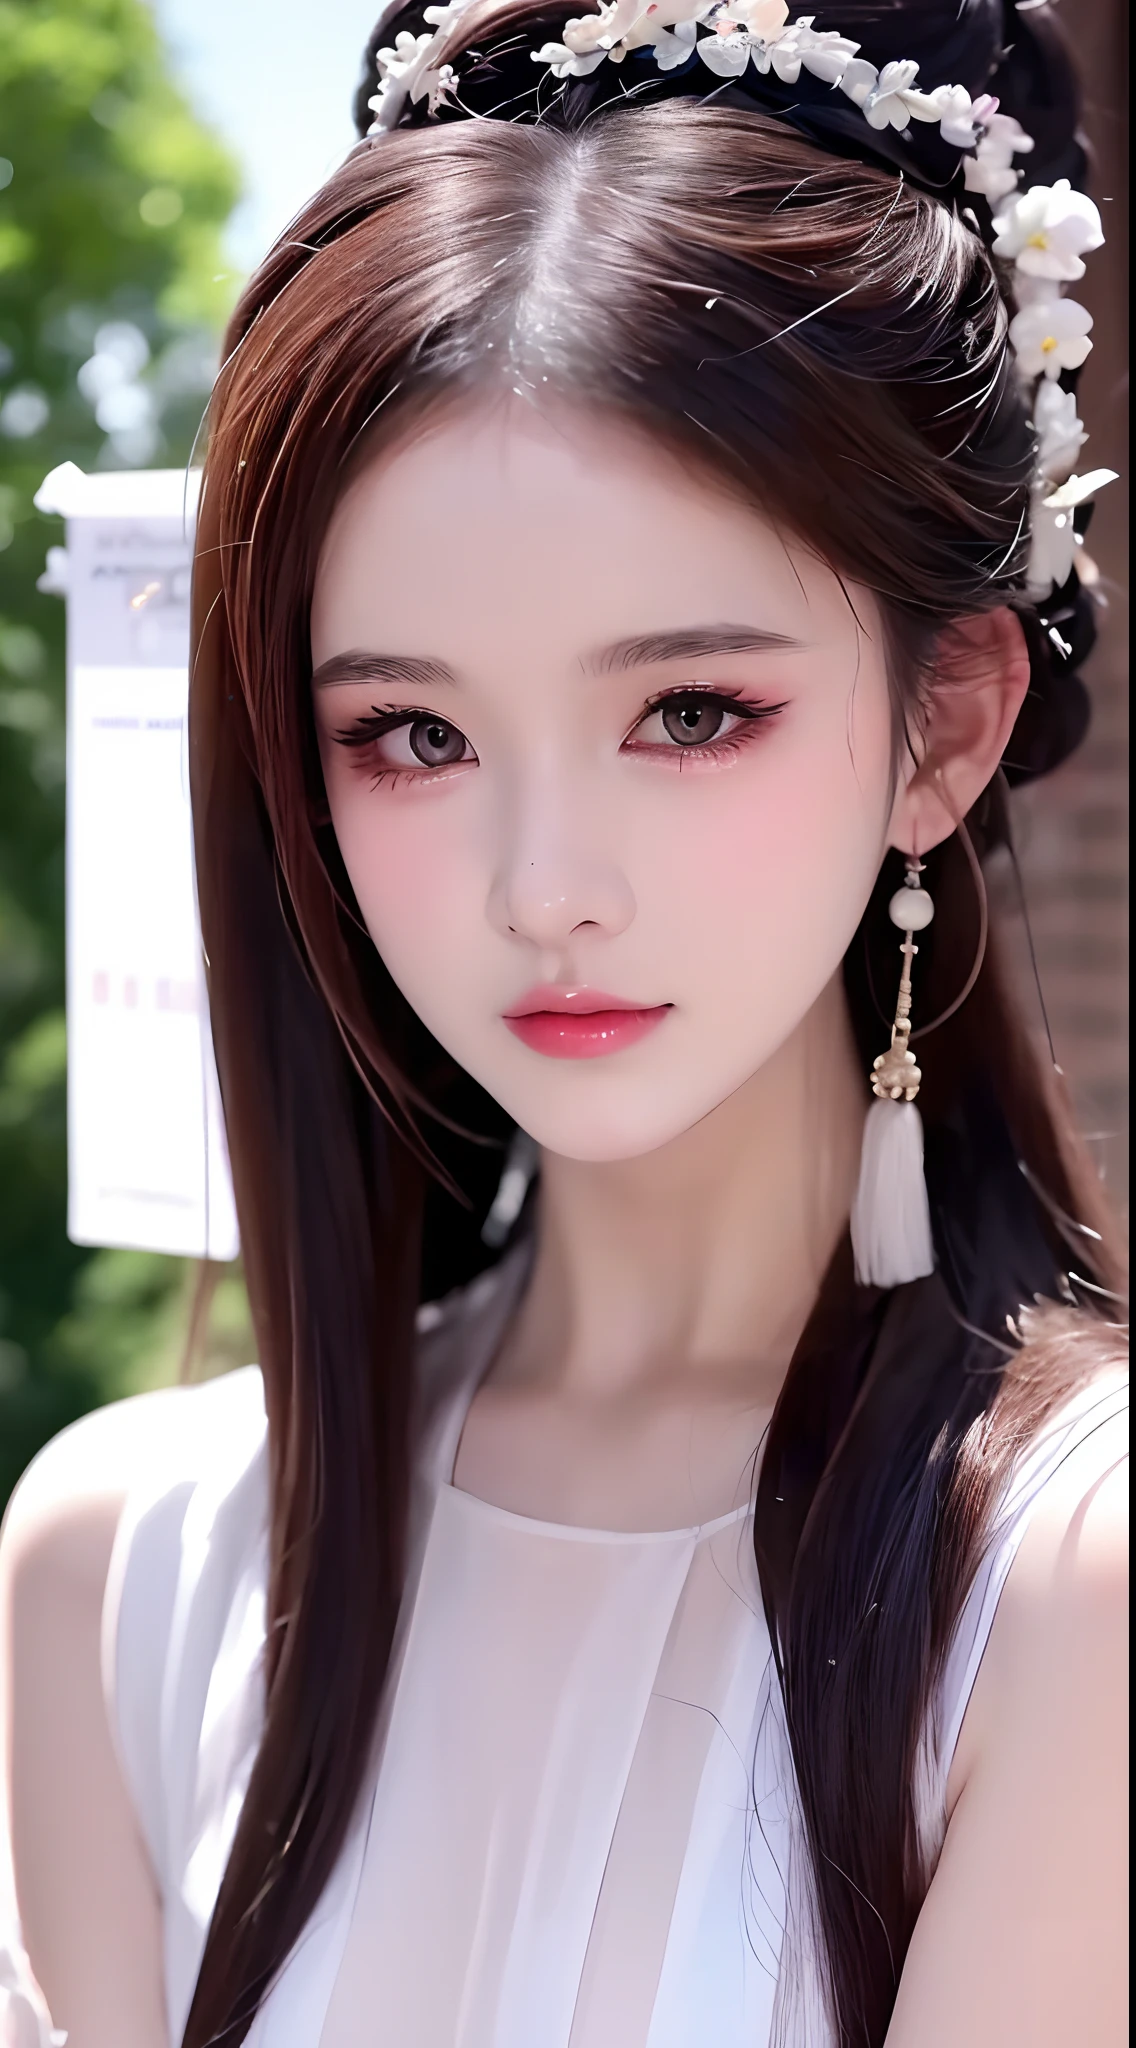 1 真实美丽的女孩, 腰长发, 黑眼睛, 古代奥黛, Style Hanfu, 穿着中国古代的薄丝衫, 粉嫩光滑的白皙肌肤, 穿着朴素的古代风格的奥黛, 照片中出现肩膀和头部, 好可爱的小脸, 湿润细致化妆后的眼袋, 丰满红唇, 迷人小弯唇, ((闭嘴:1.0)), 平衡的门牙, 尴尬的, 小脸妆容细致，非常漂亮, 乳房超级圆润紧实, 隆胸, 布卢姆 , 里面穿一件吊带背心遮住女孩的胸部, 脸红, 从正面, 戴耳环, 项链, 从上面, 看着观众, 上翻的眼睛, 全身, 杰作, 顶级品质, 最好的质量, 官方艺术, 团结 8k 壁纸, 高分辨率, 超高分辨率, 极其详细, (真实感:1.2), 独自的, 独自的, 仅 1 名女孩, Style Hanfu Dunhuang, 10x 像素, 超现实, 超高品质, 女孩的肖像身体视图, 上半身,